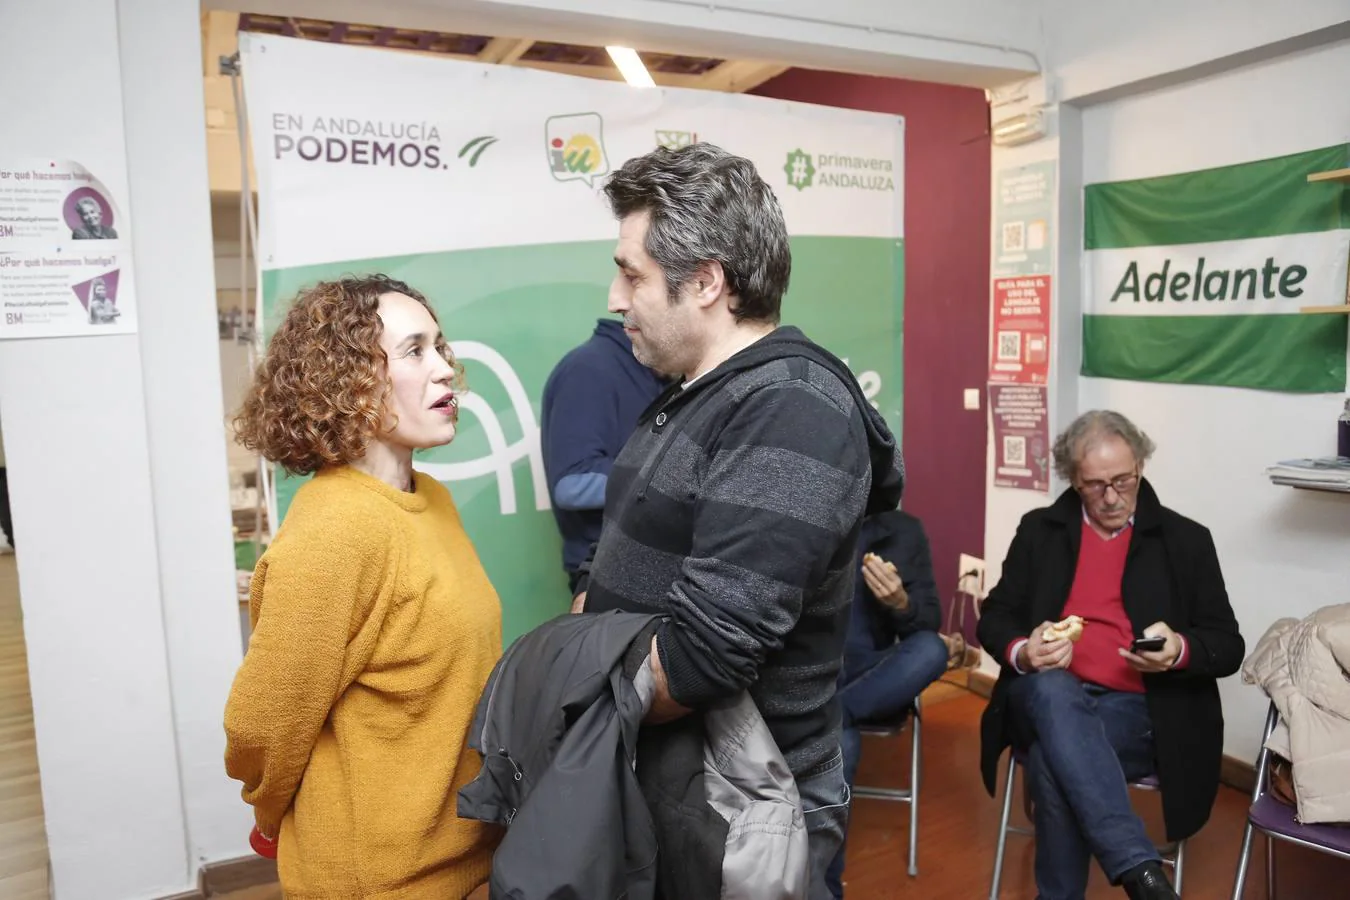 La jornada electoral de Adelante Andalucía, en imágenes